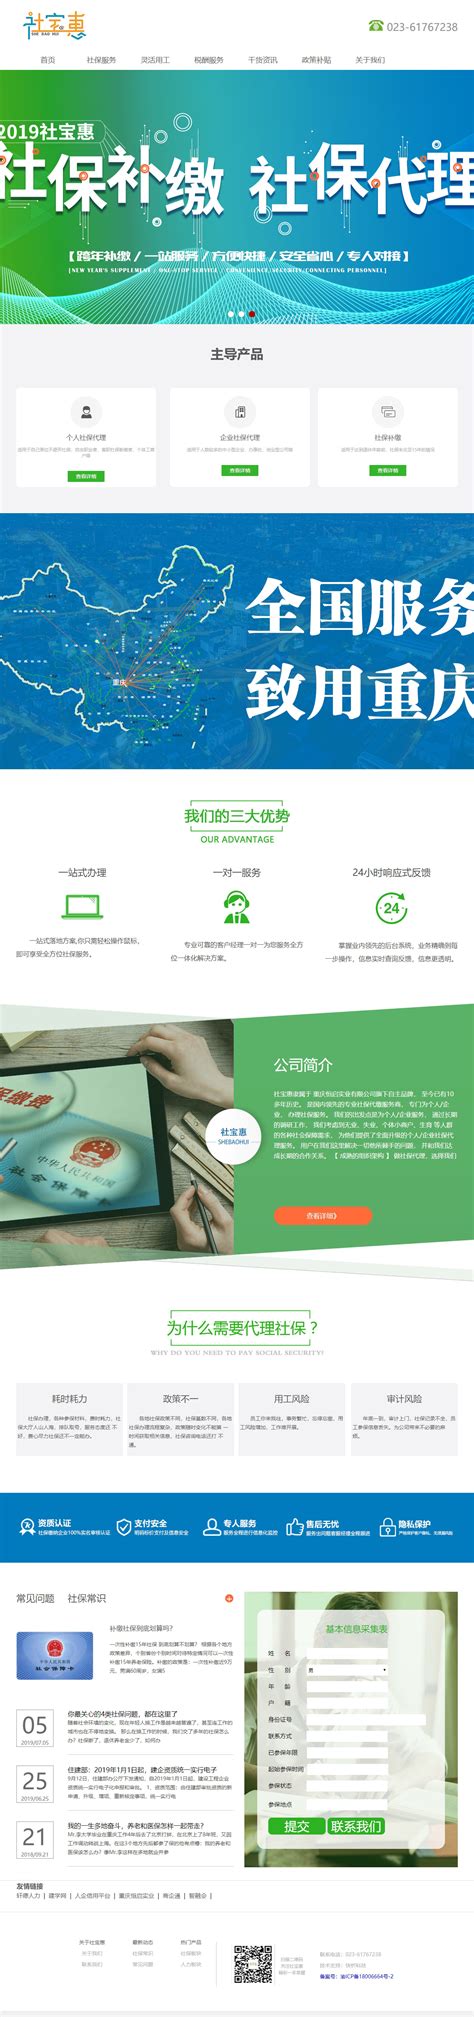 重庆定制型网站建设推广